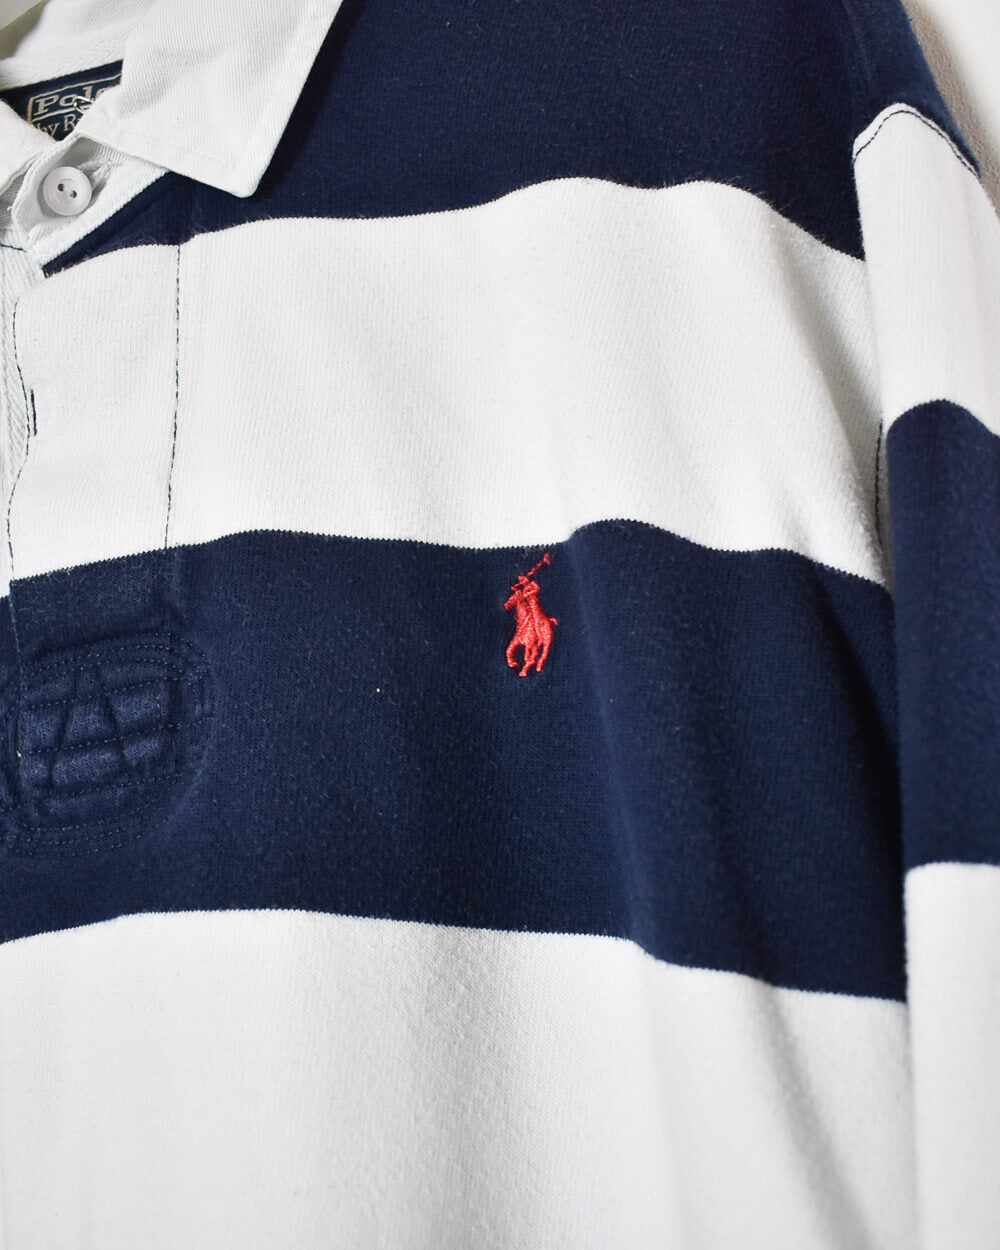 Navy Ralph Lauren Rugby Shirt - XX-Large